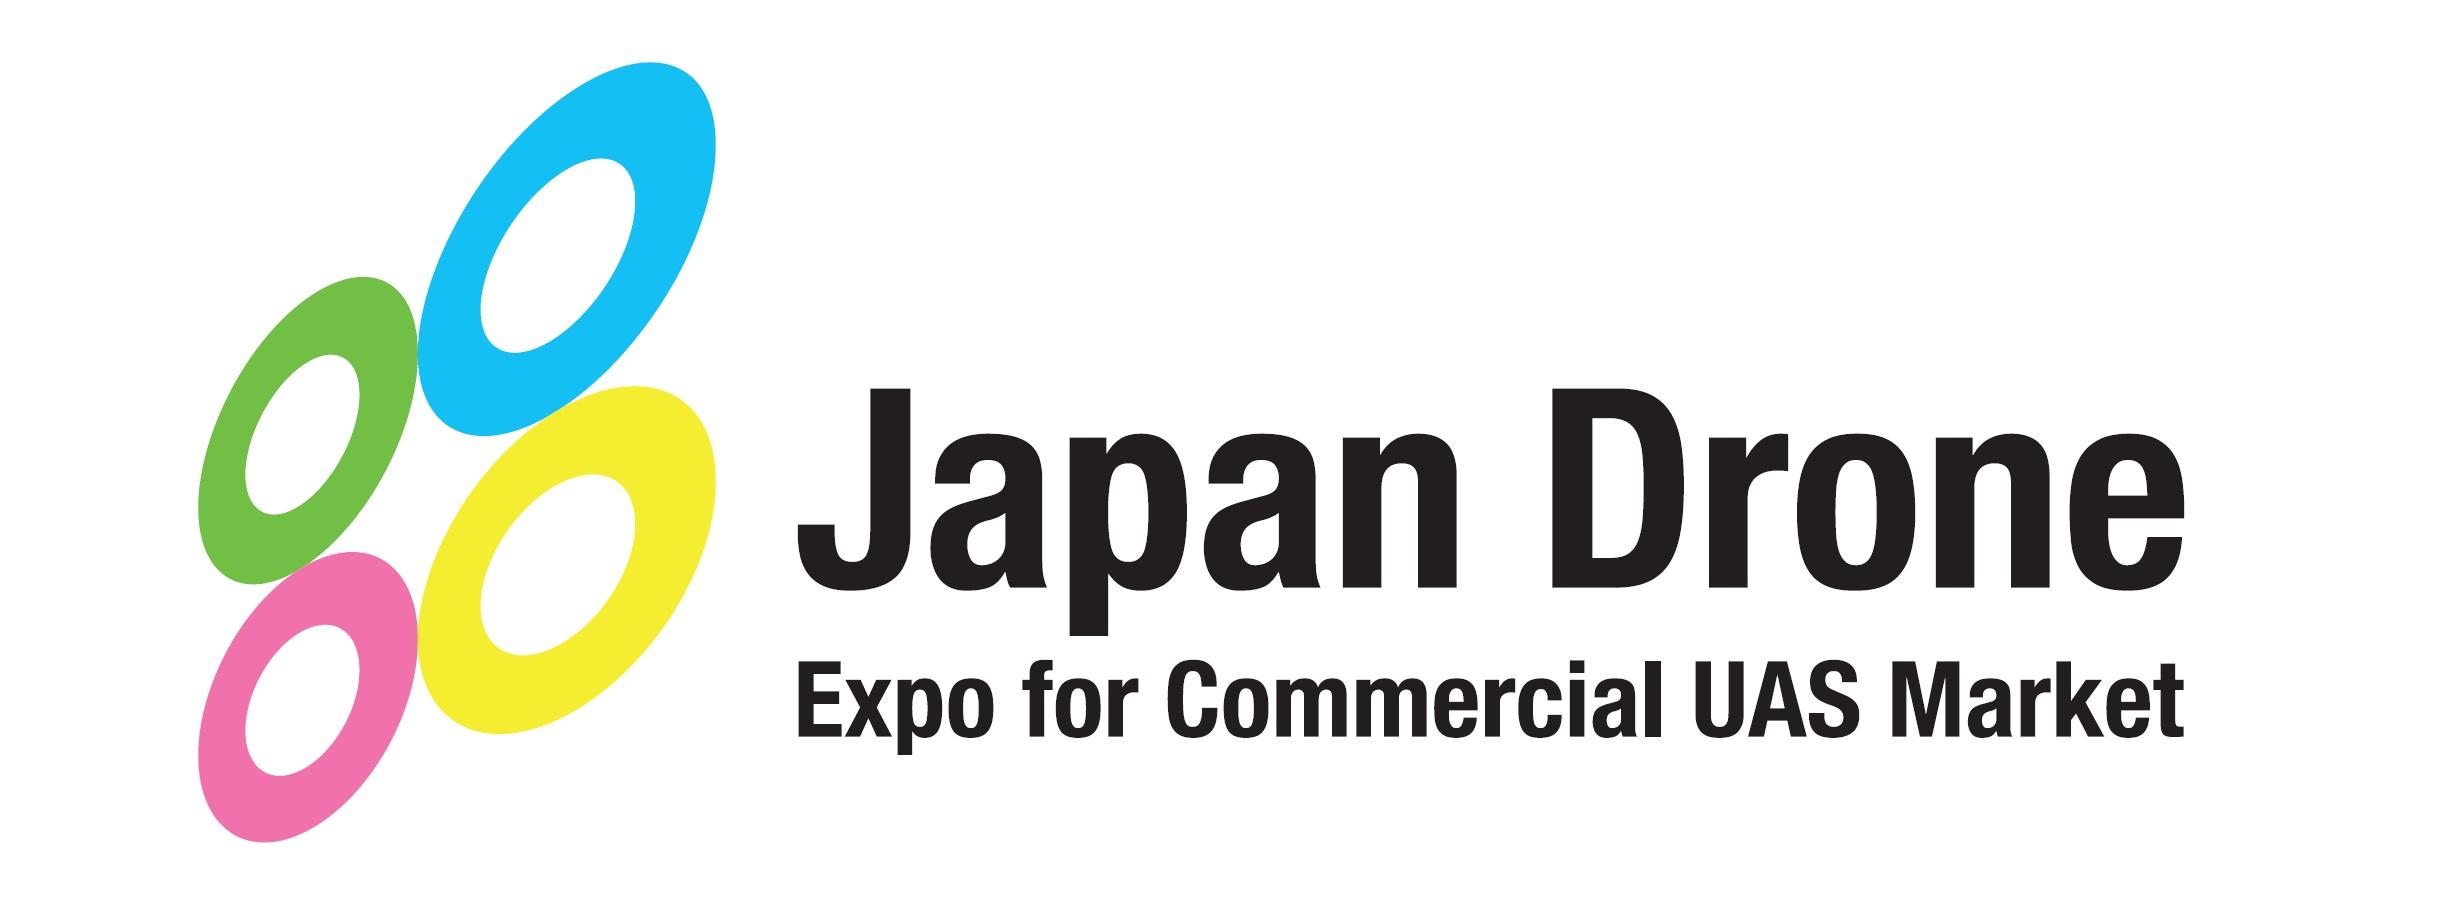 ジャパンドローン 2021 (Japan Drone 2021)　出展のお知らせ